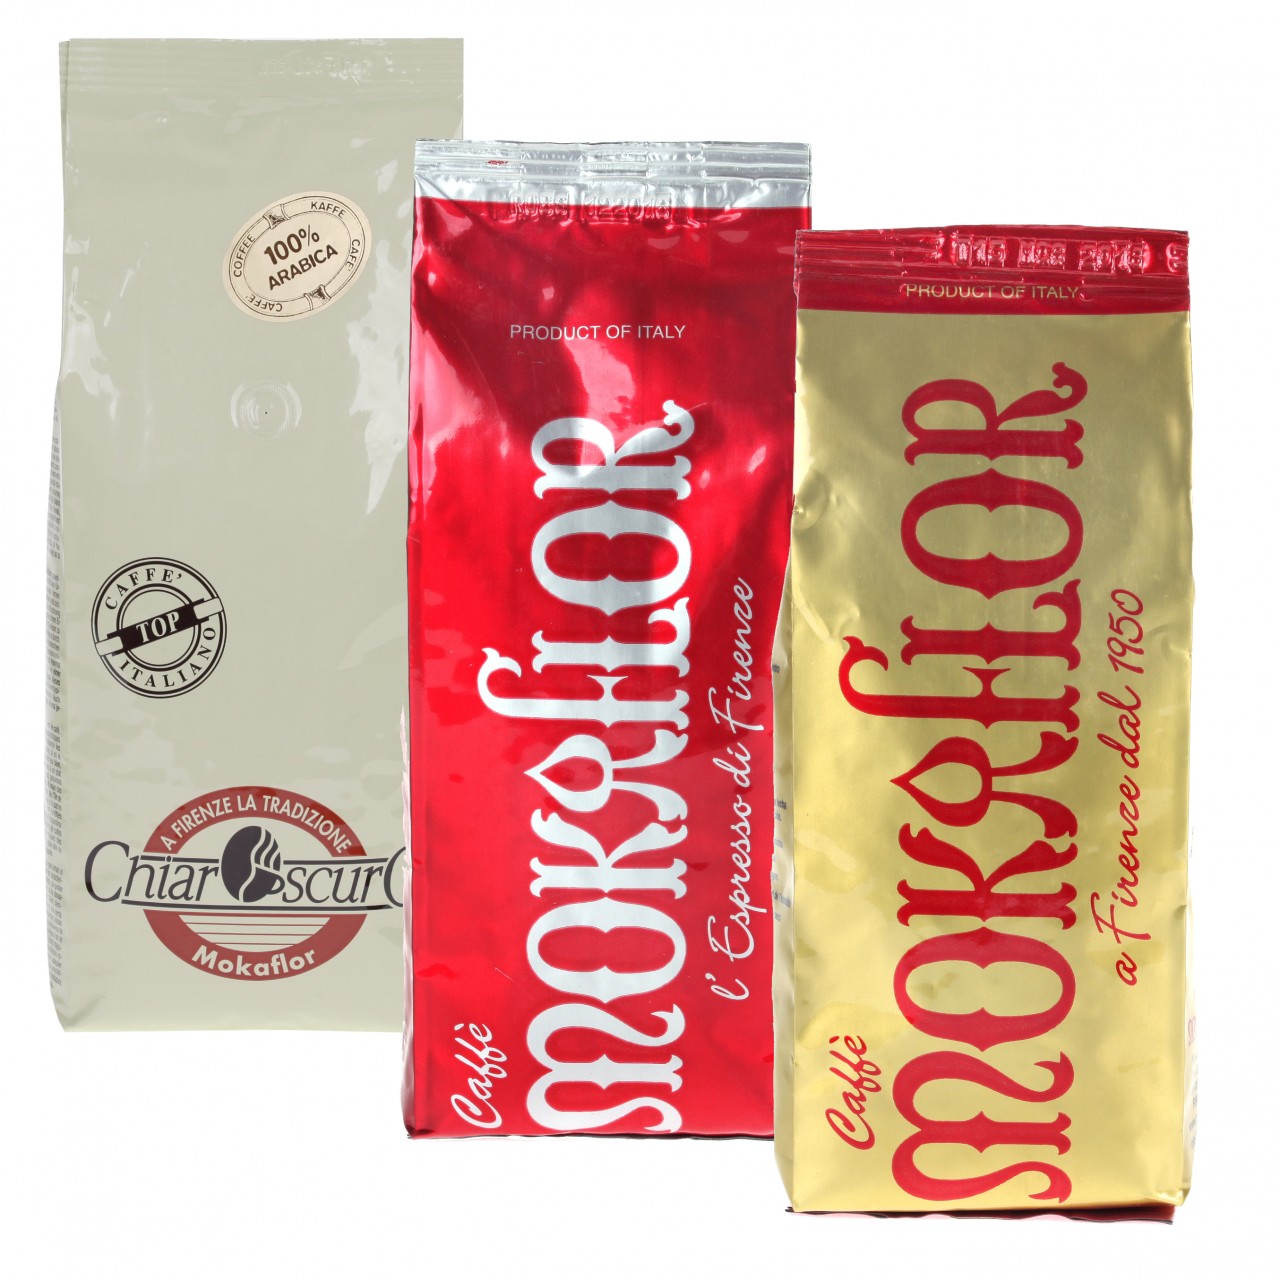 Mokaflor Tasting Package 3 X 1000 G